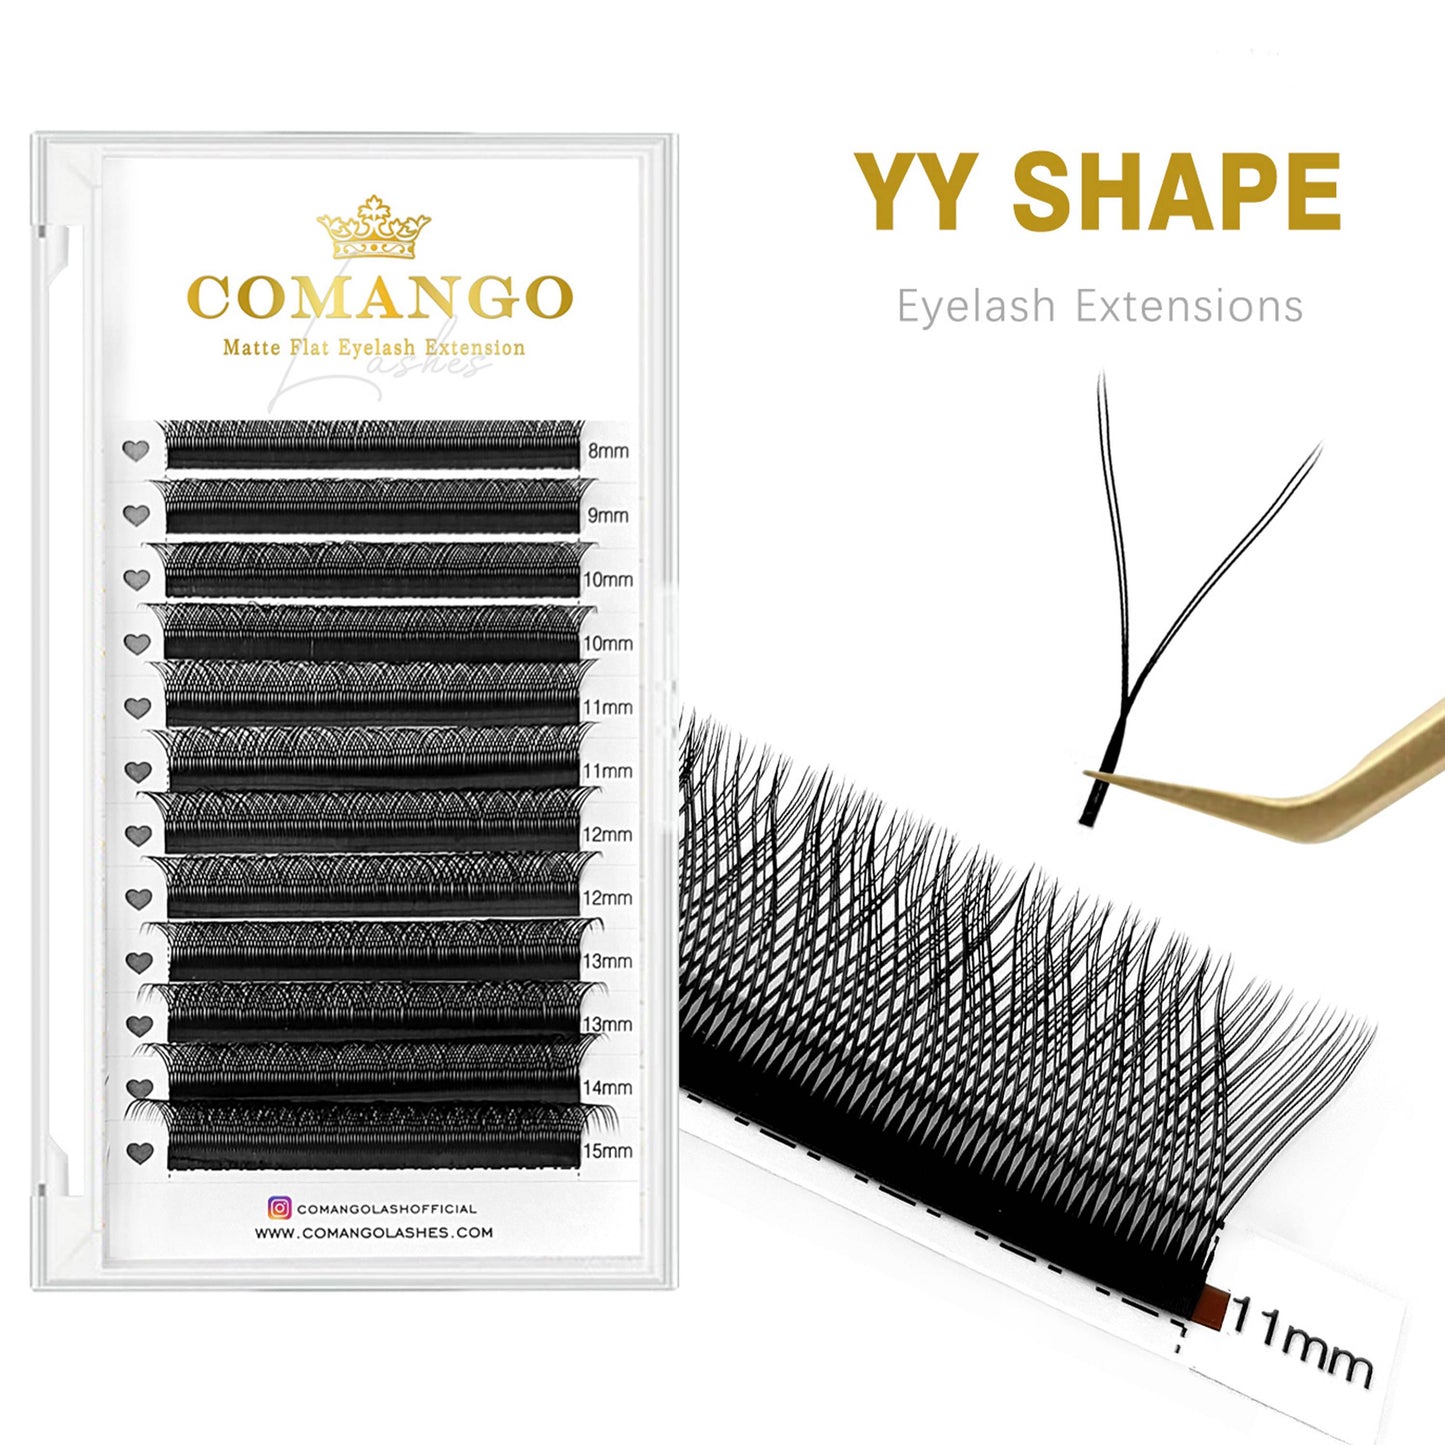 YY Shape Lashes Extension Premade Volume Fans | CoMango